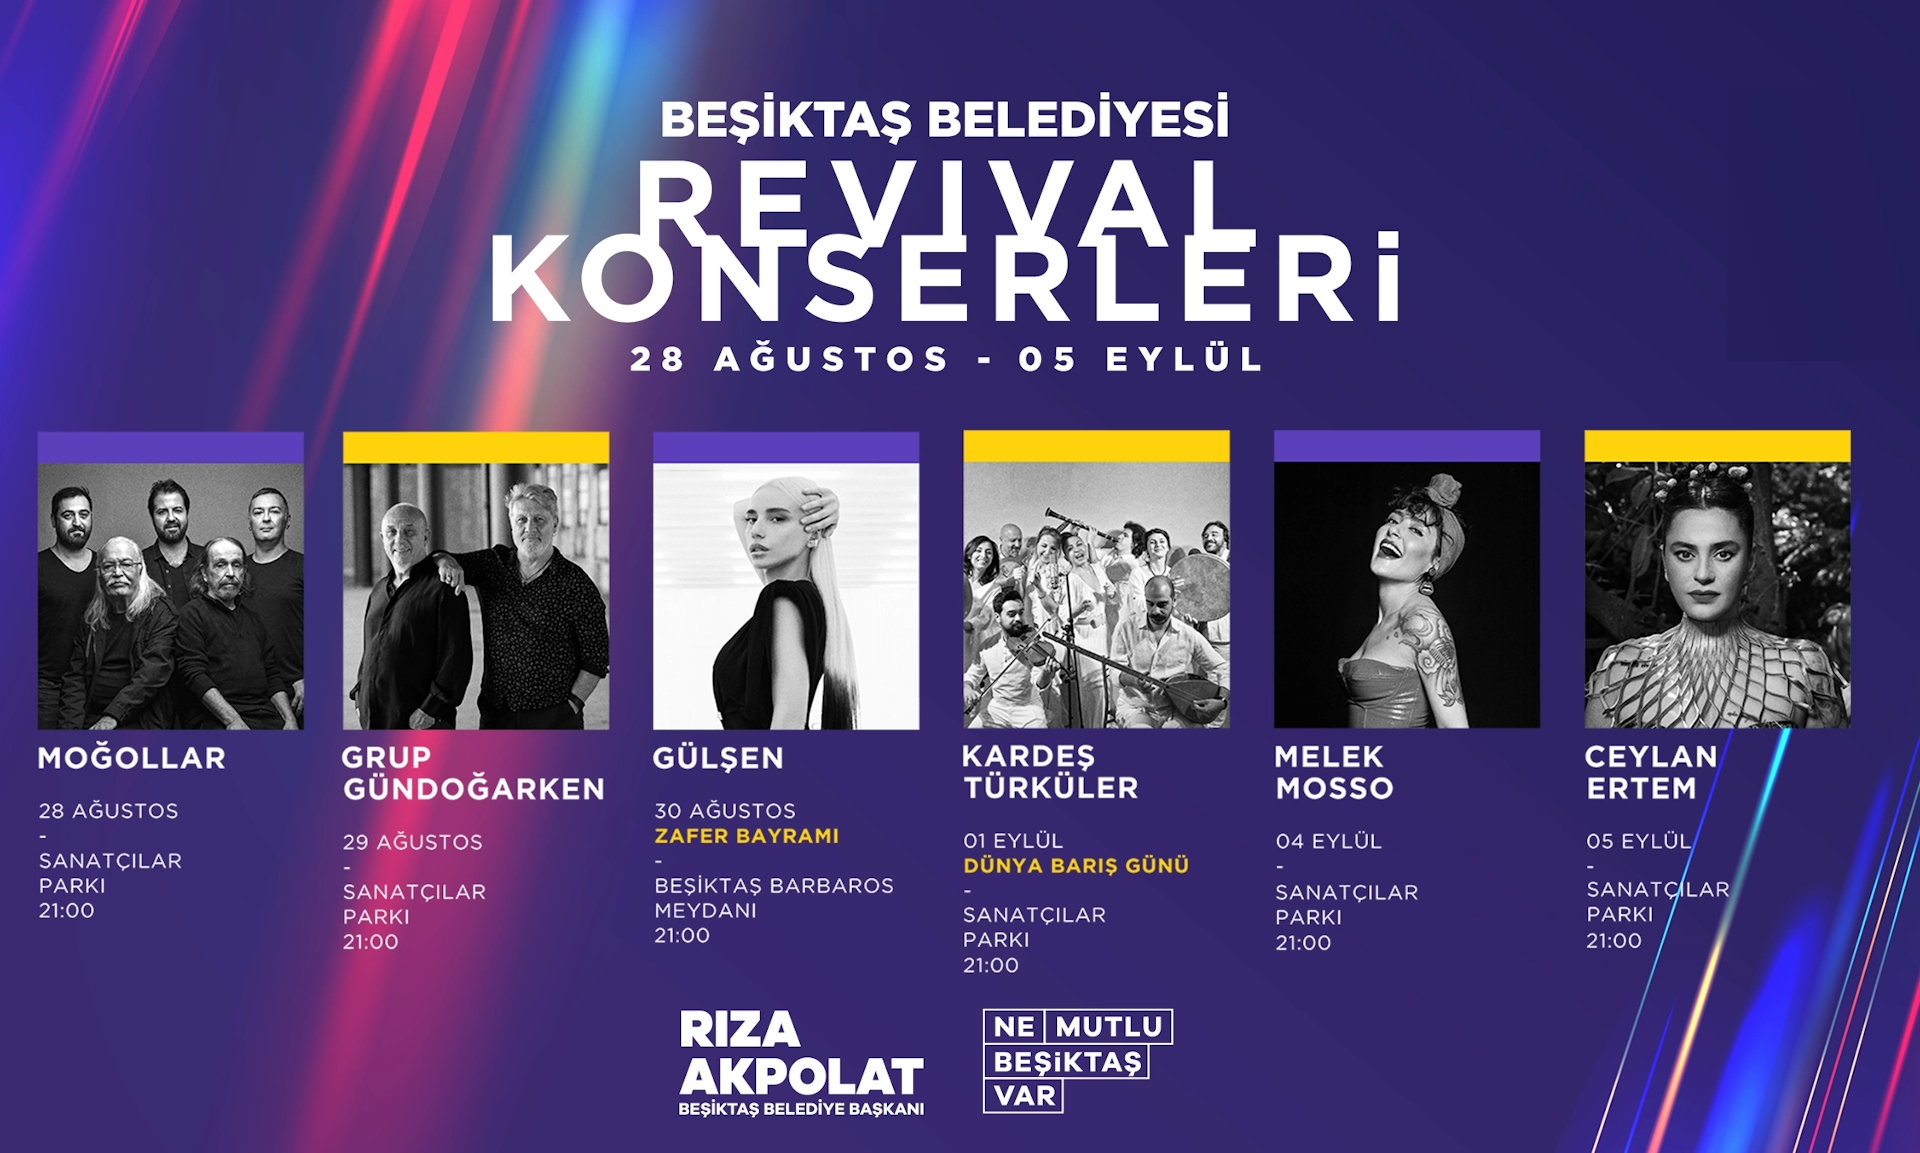 Melek Mosso - Beşiktaş Belediyesi Revival Konserleri